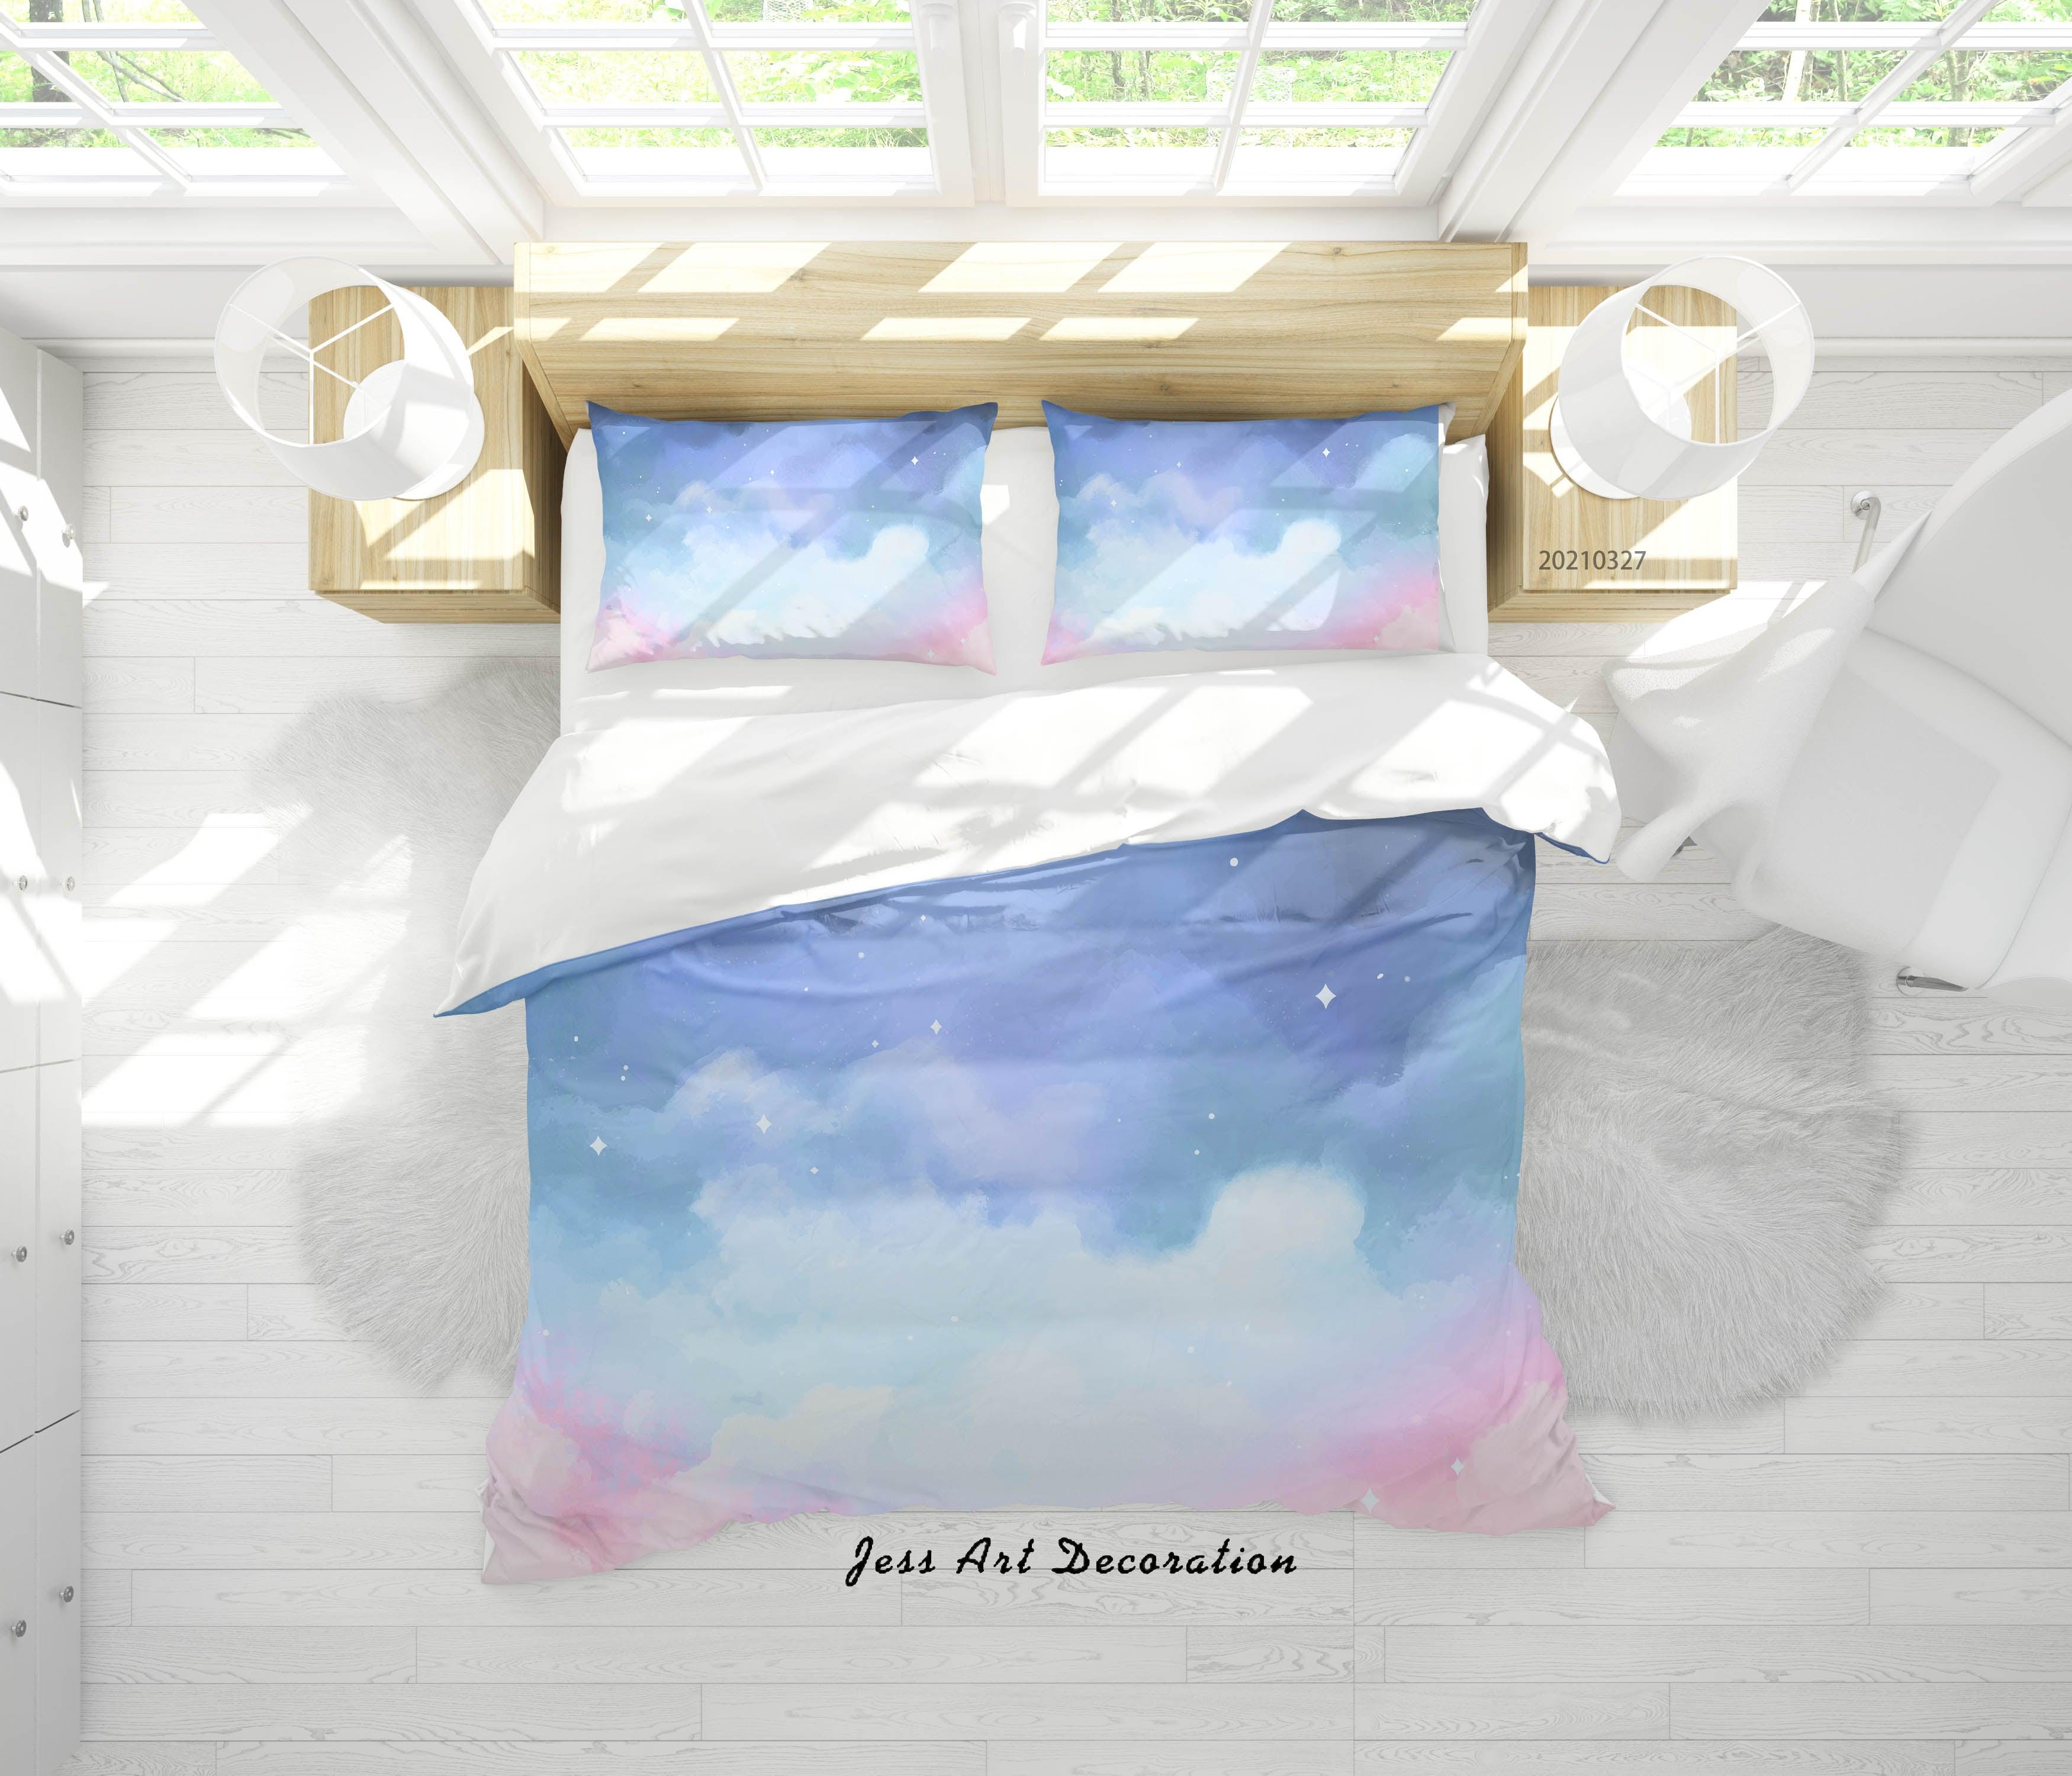 3D Watercolor Sky Cloud Quilt Cover Set Bedding Set Duvet Cover Pillowcases 52- Jess Art Decoration